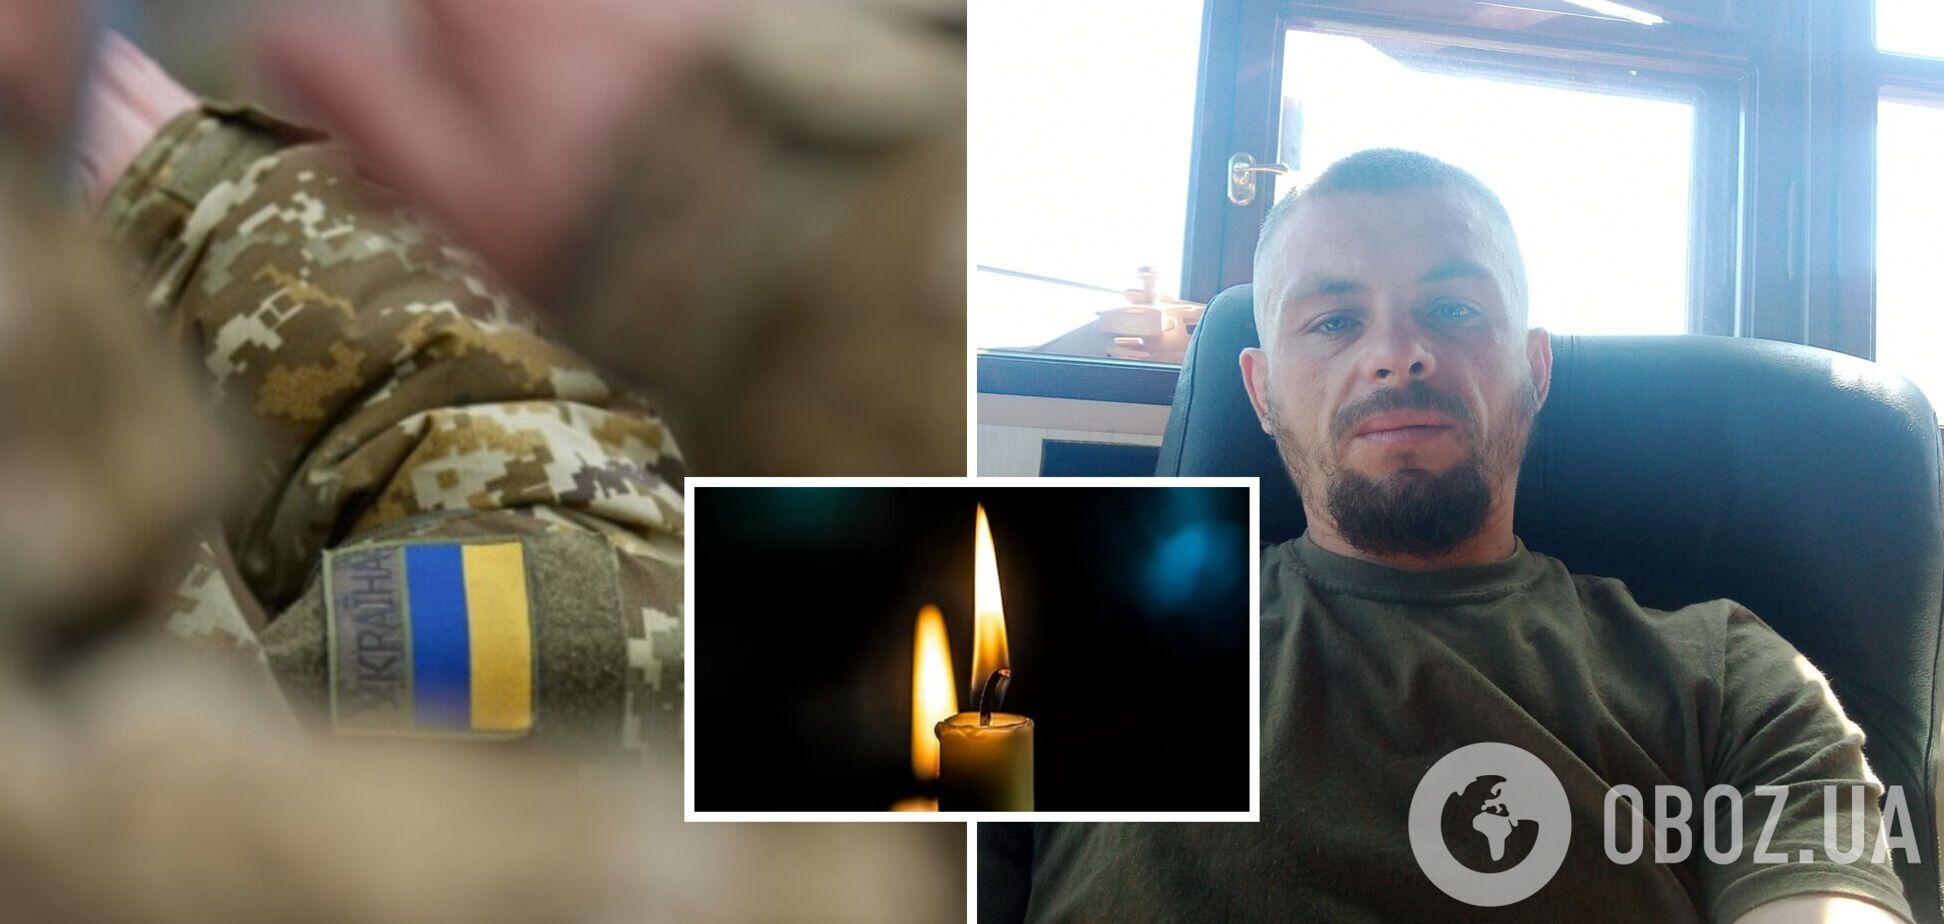 Излучал добро изнутри: в боях за Украину погиб 28-летний пограничник